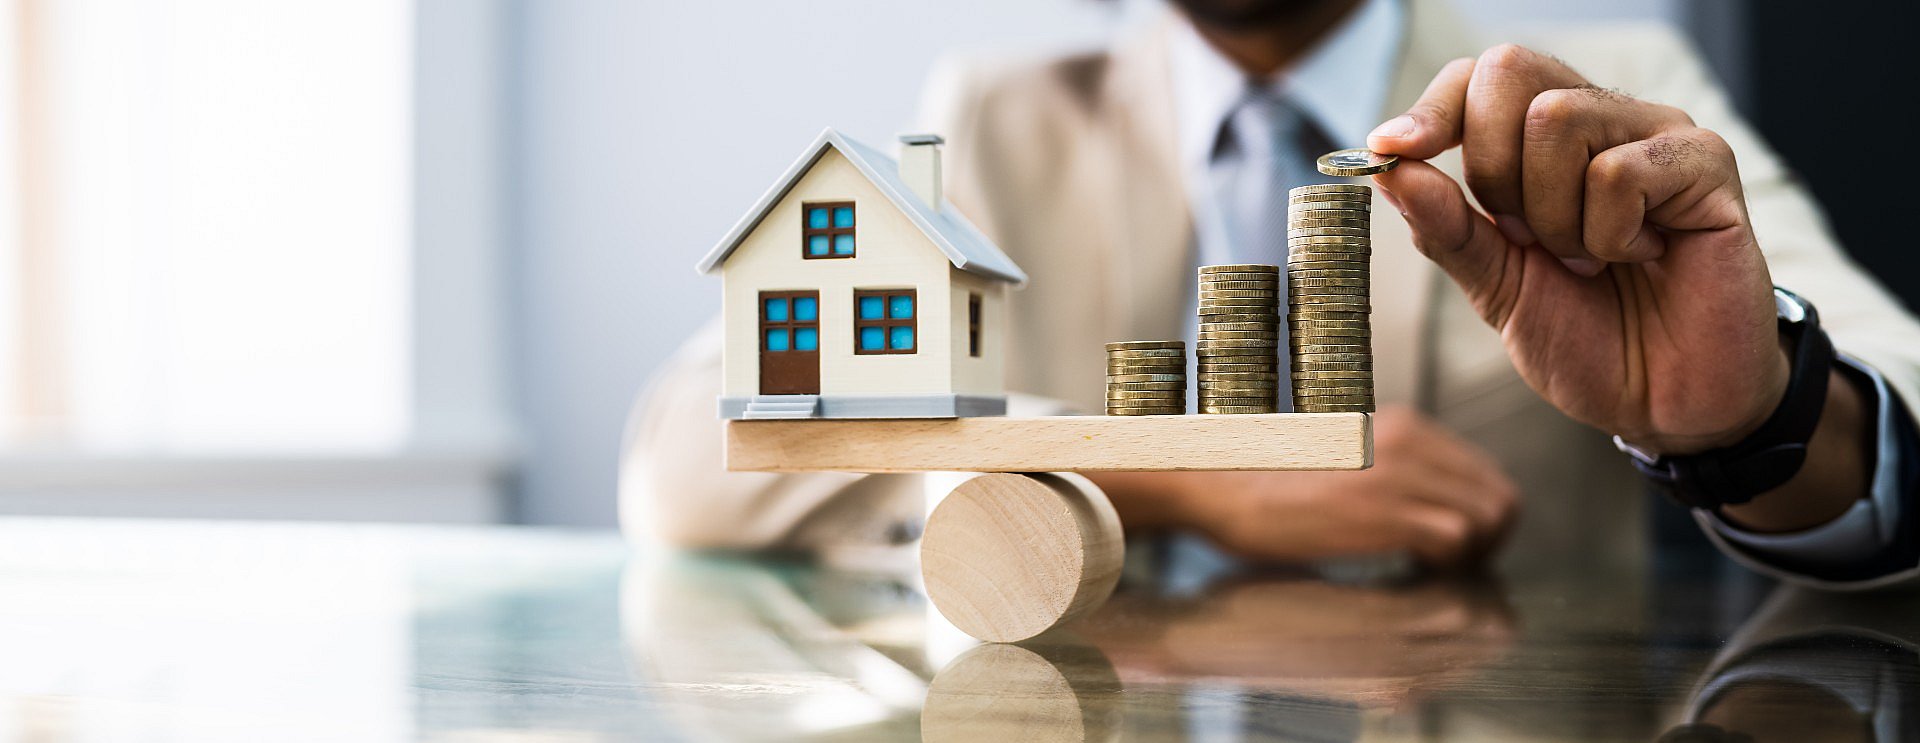 Ochlazení trhu s nemovitostmi jako důsledek vyšší nedostupnosti hypoték